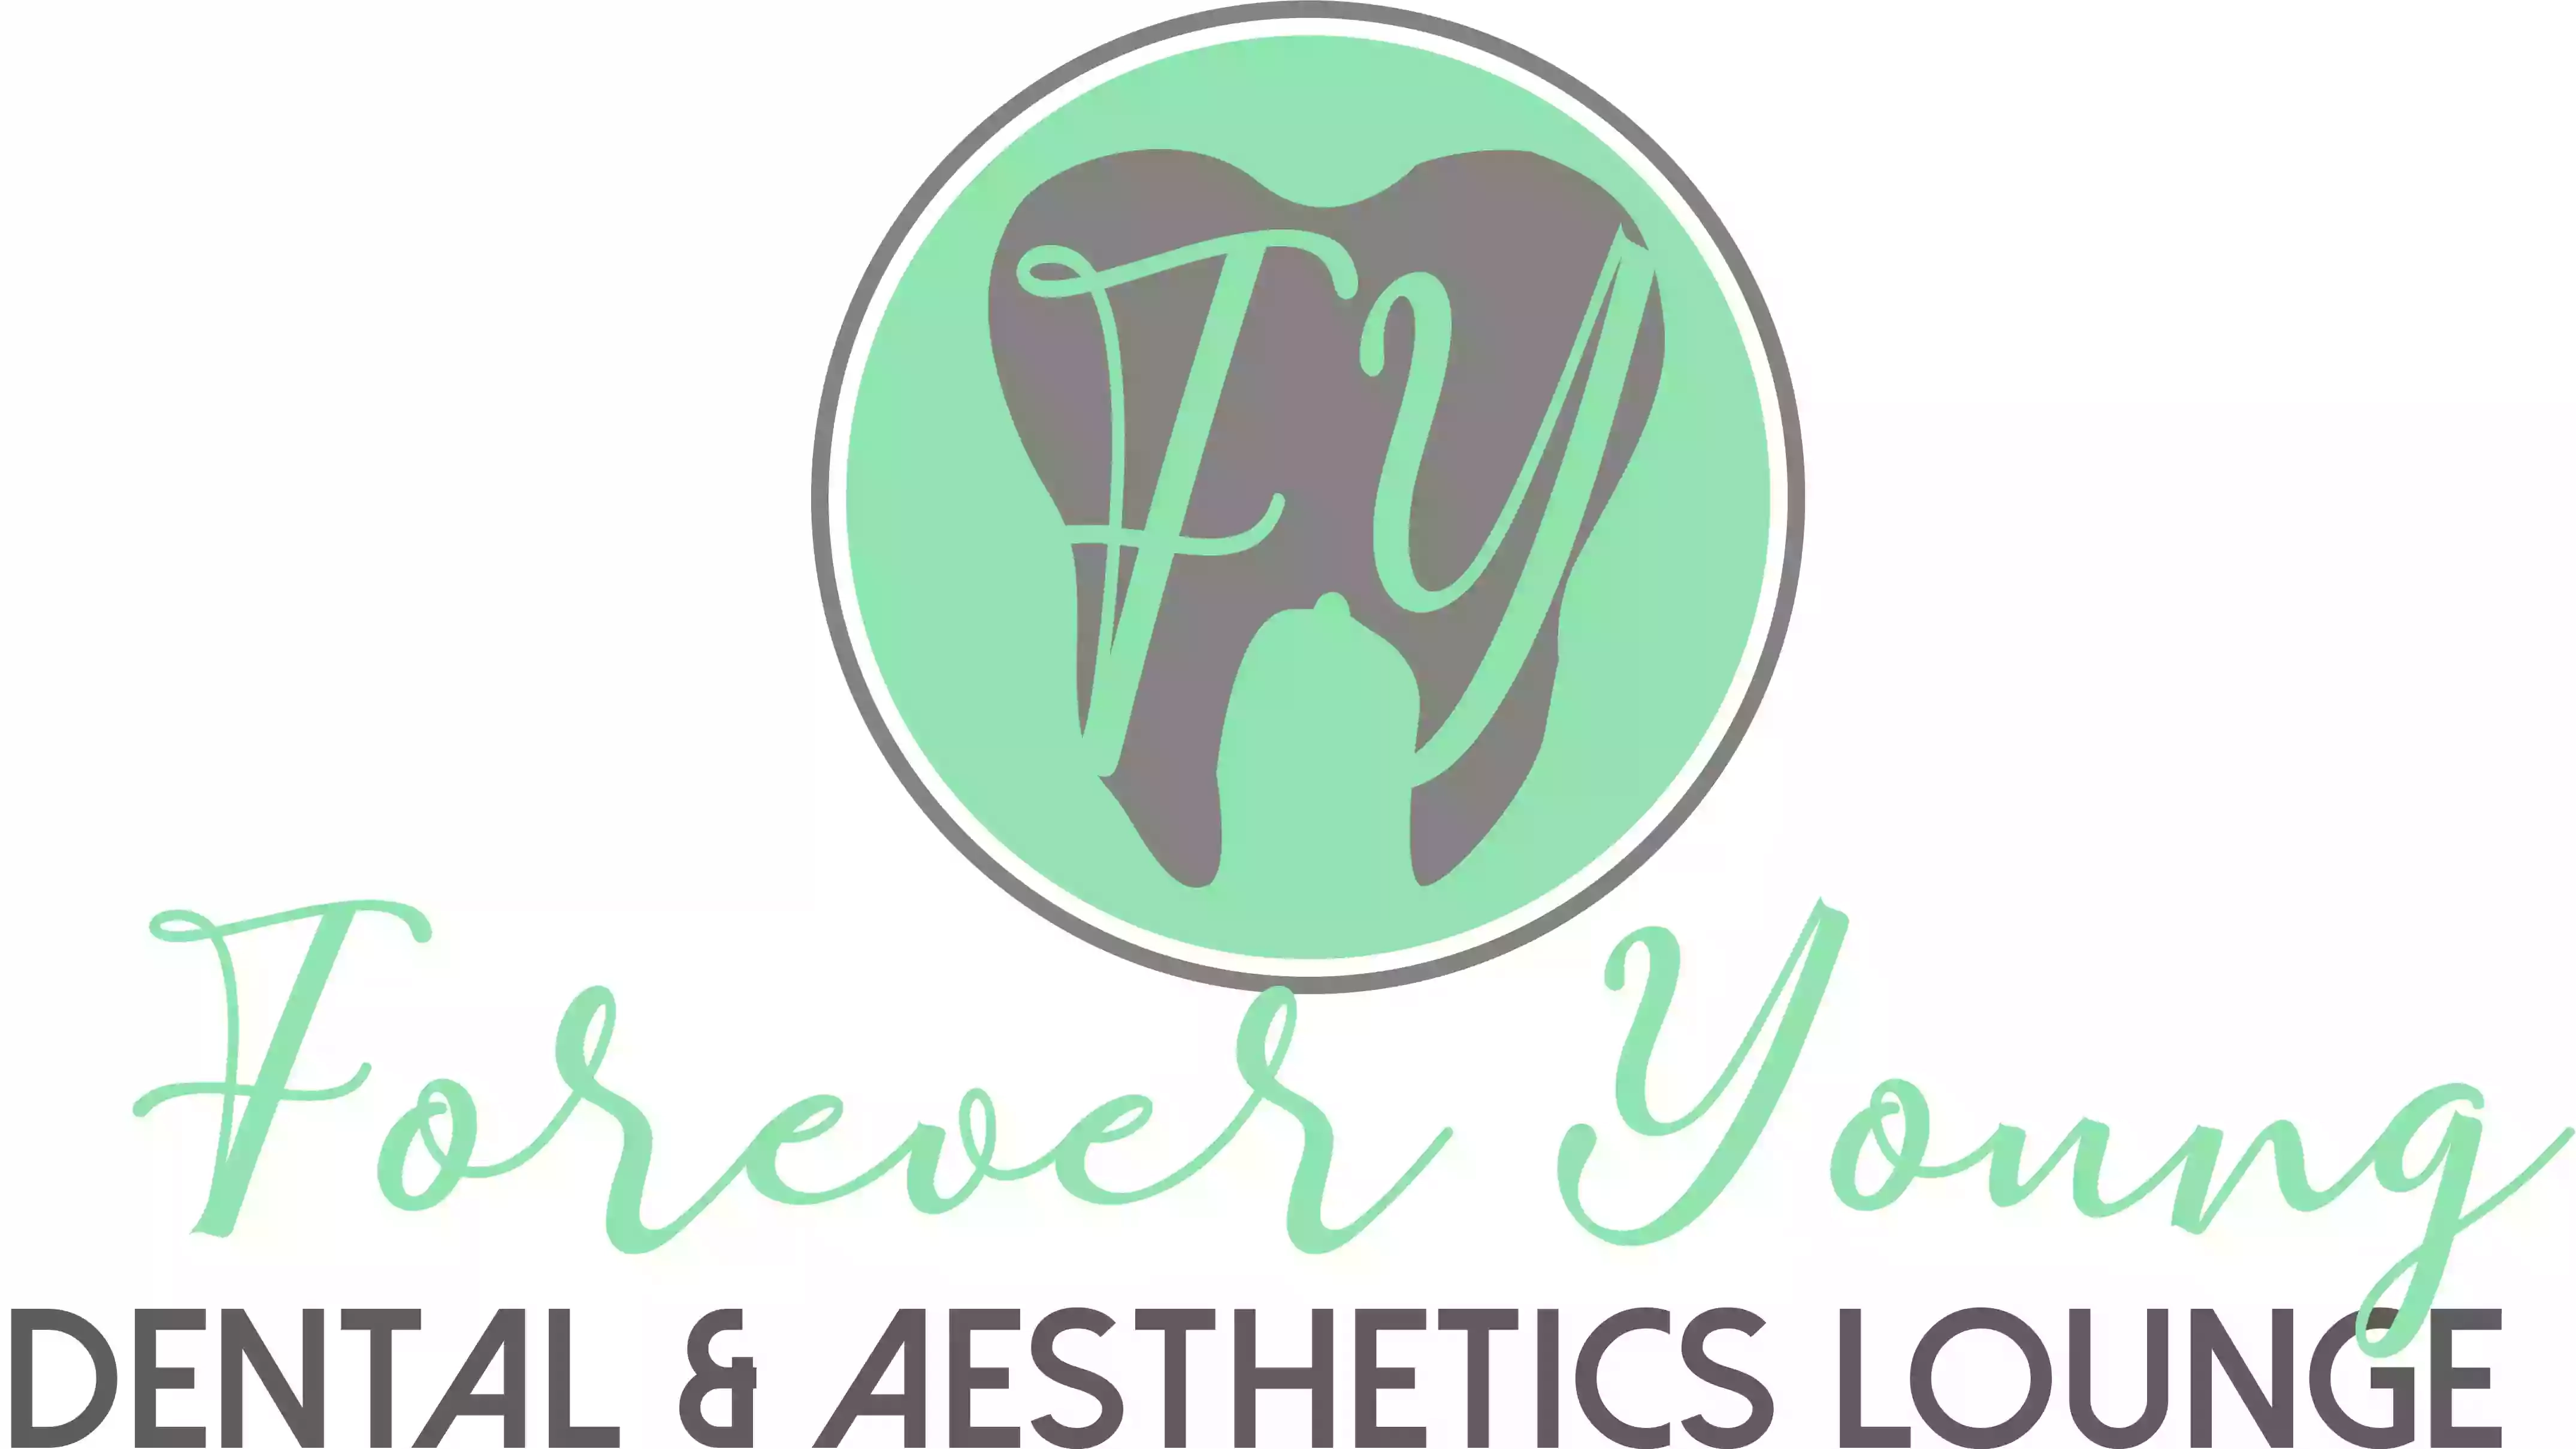 Forever young Dental & Aesthetics Ltd